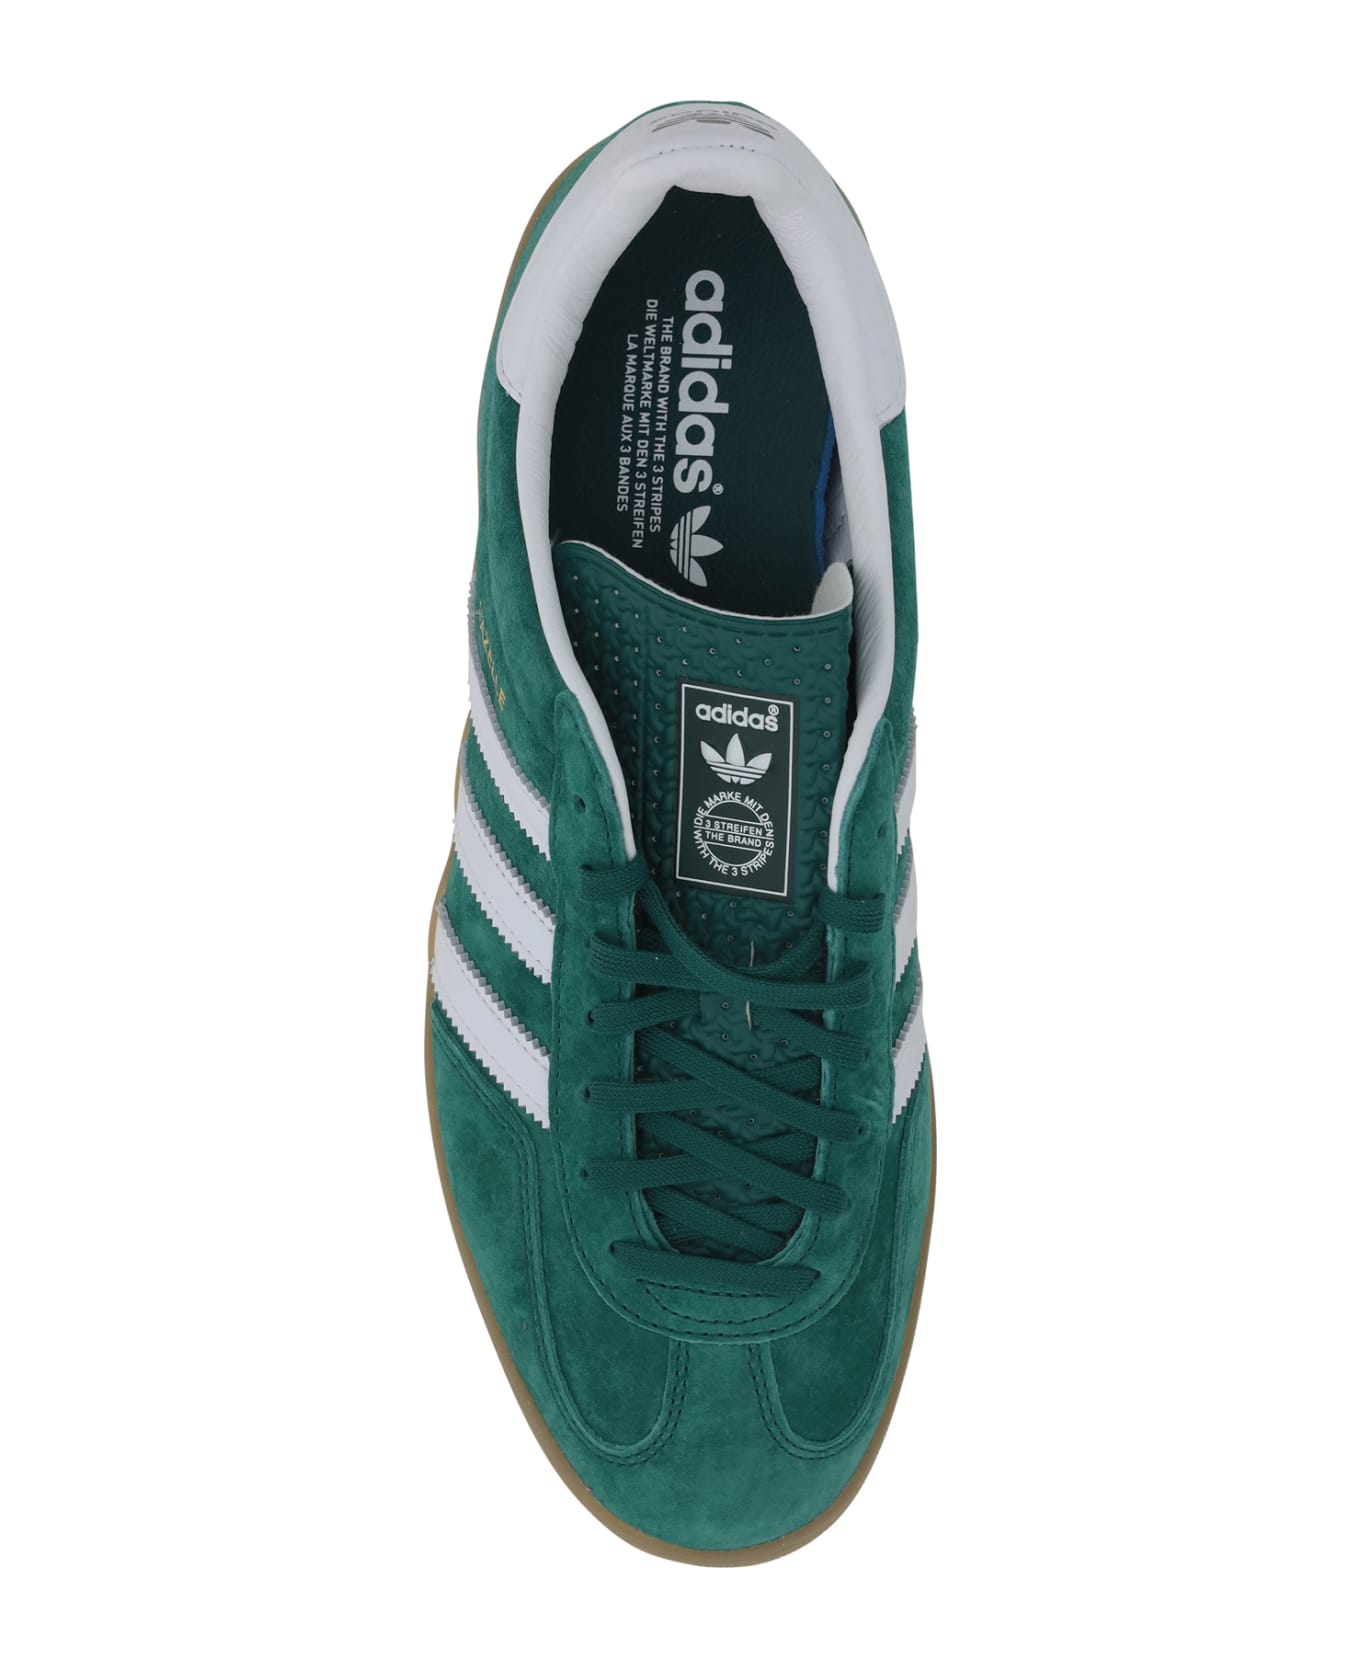 Adidas Gazelle Indoor Sneakers - Cgreen/ftwwht/gum2